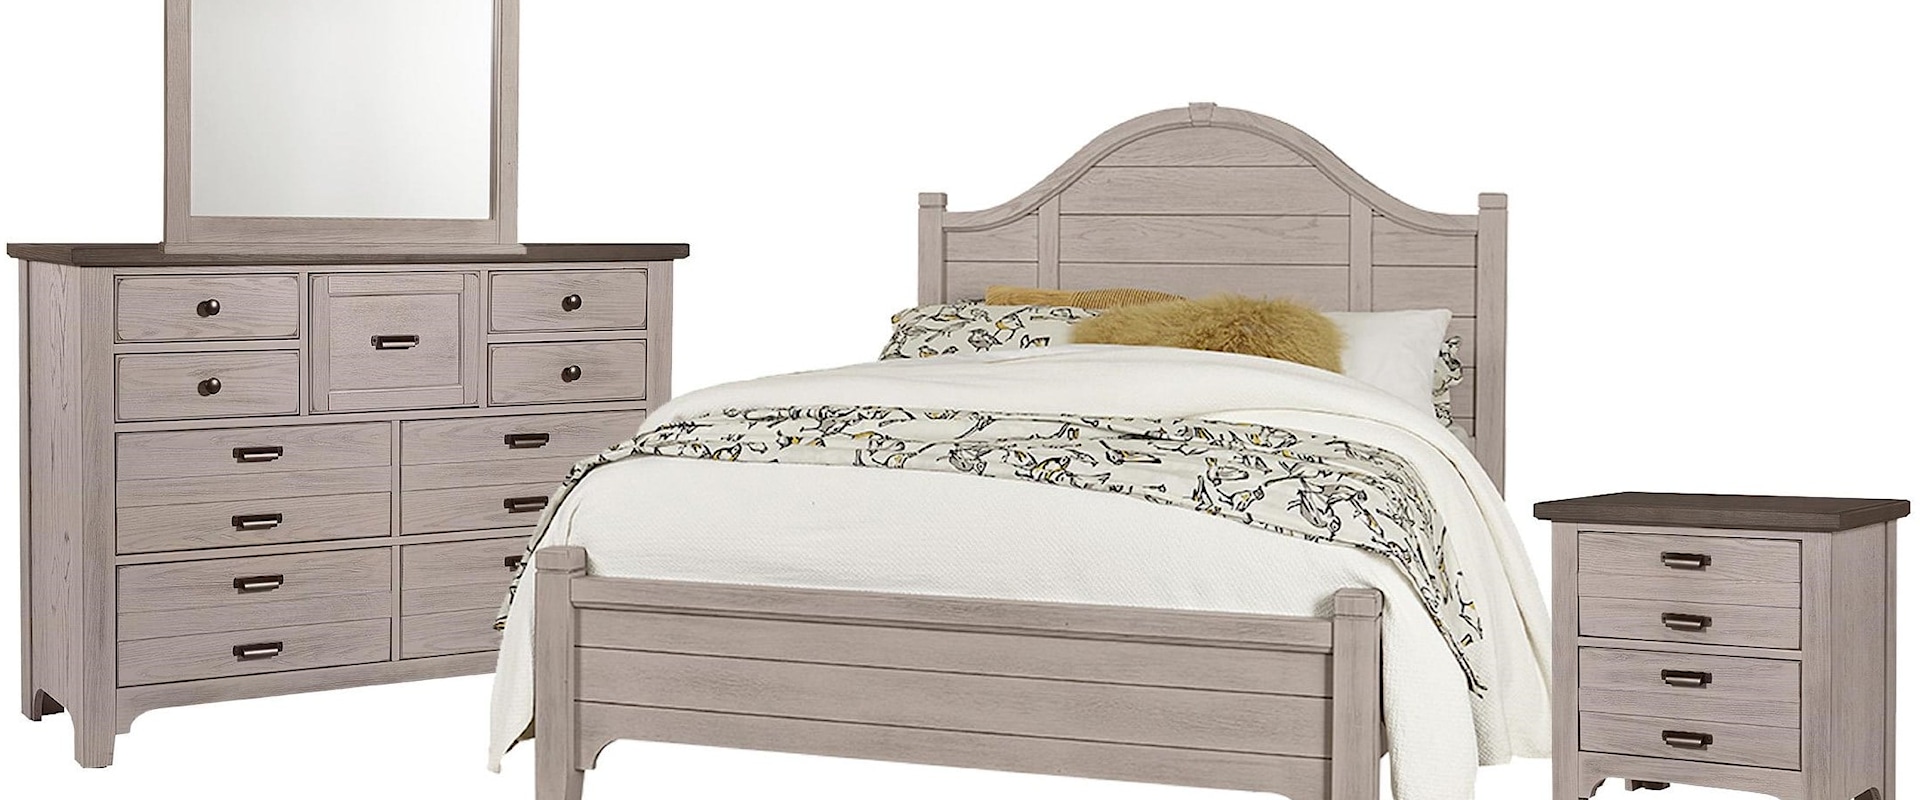 Queen Arch Bed, 9 Drawer Dresser, Master Landscape Mirror, 2 Drawer Nightstand